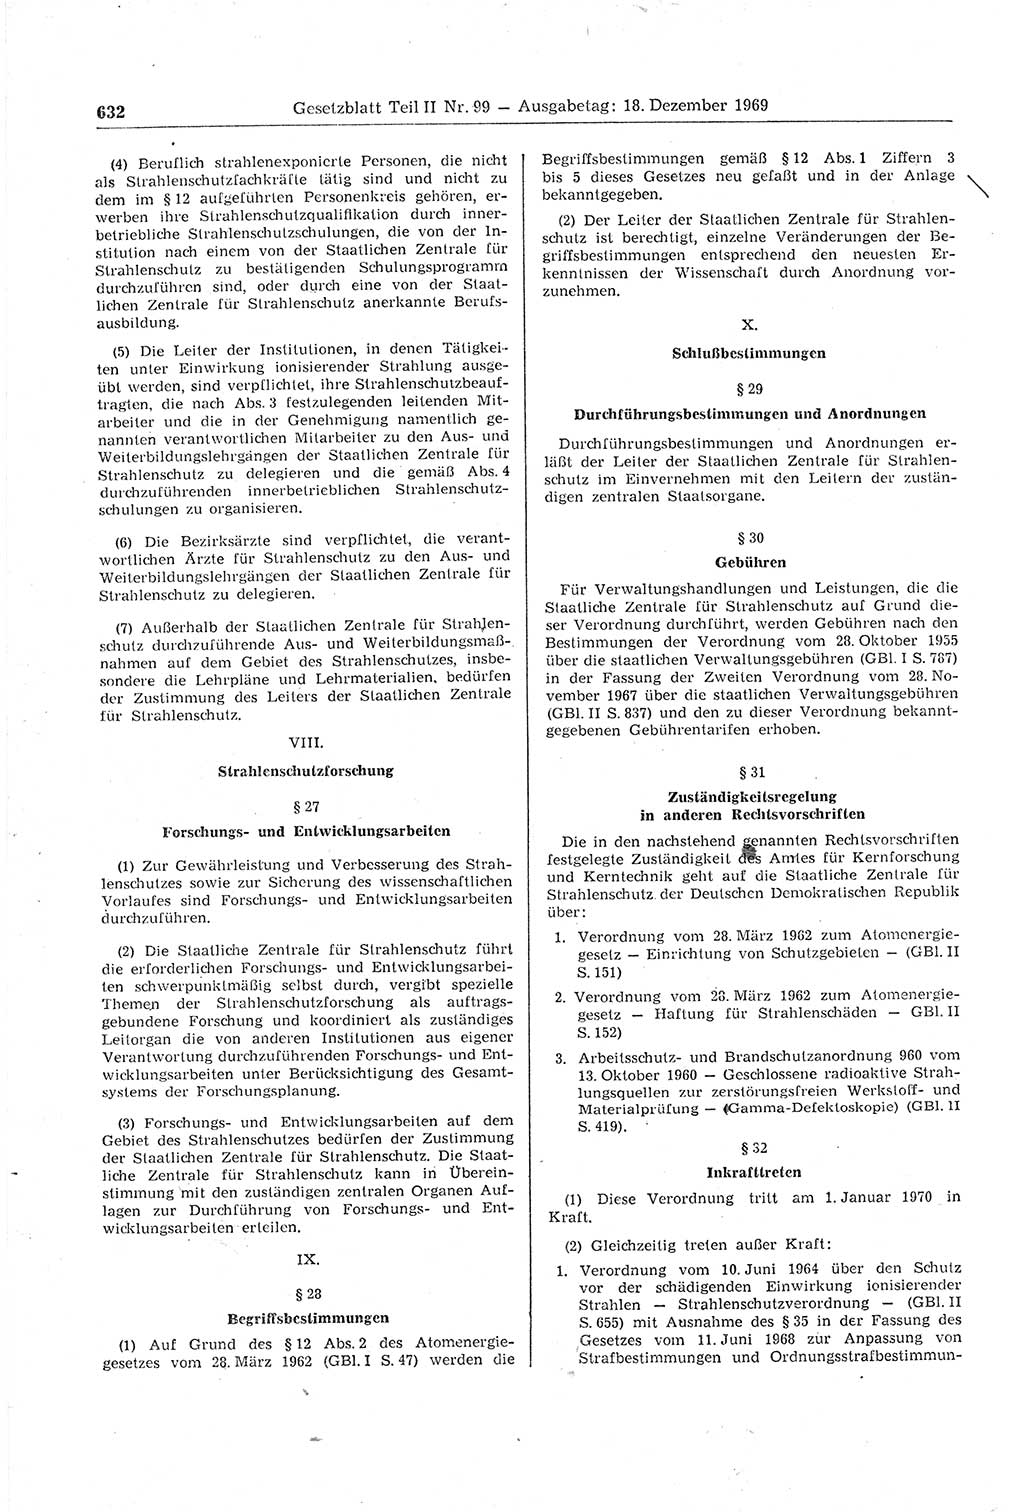 Gesetzblatt (GBl.) der Deutschen Demokratischen Republik (DDR) Teil ⅠⅠ 1969, Seite 632 (GBl. DDR ⅠⅠ 1969, S. 632)